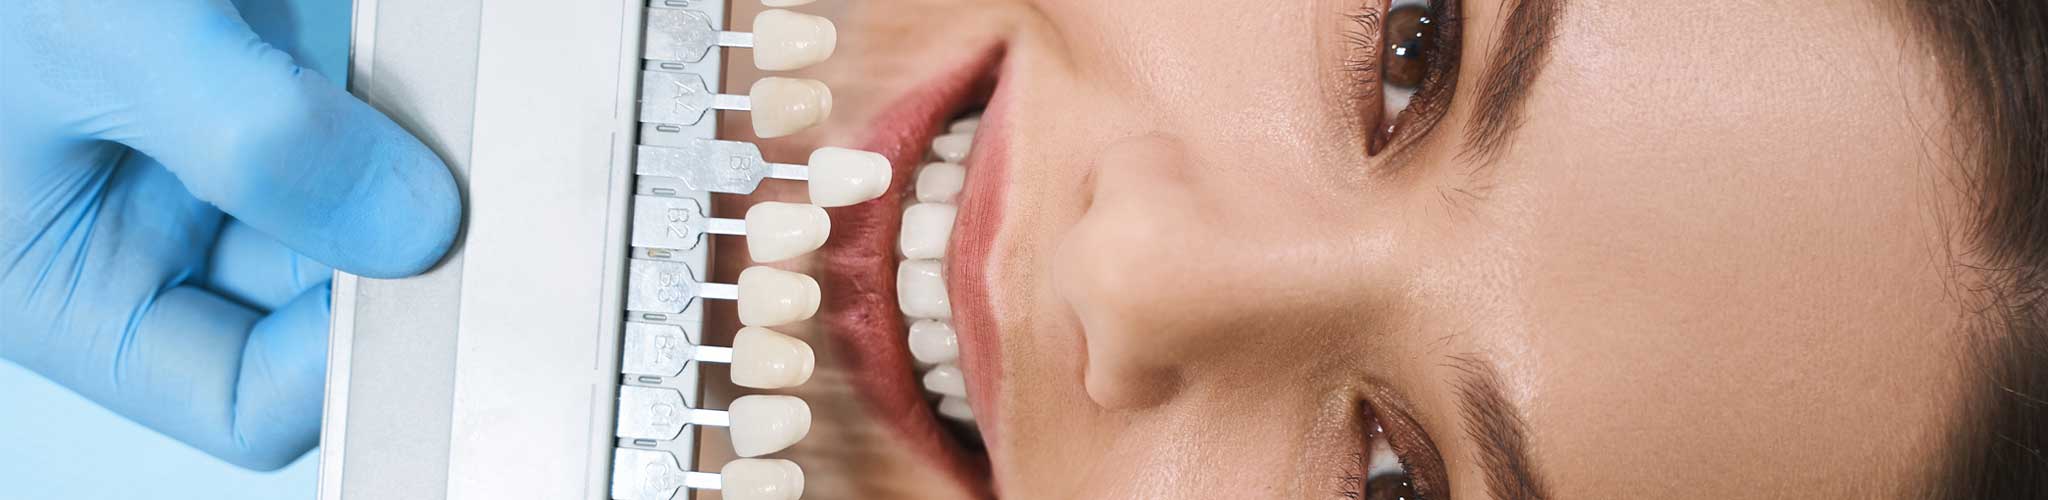 Dental Veneers - DentisTree Dental Clinic